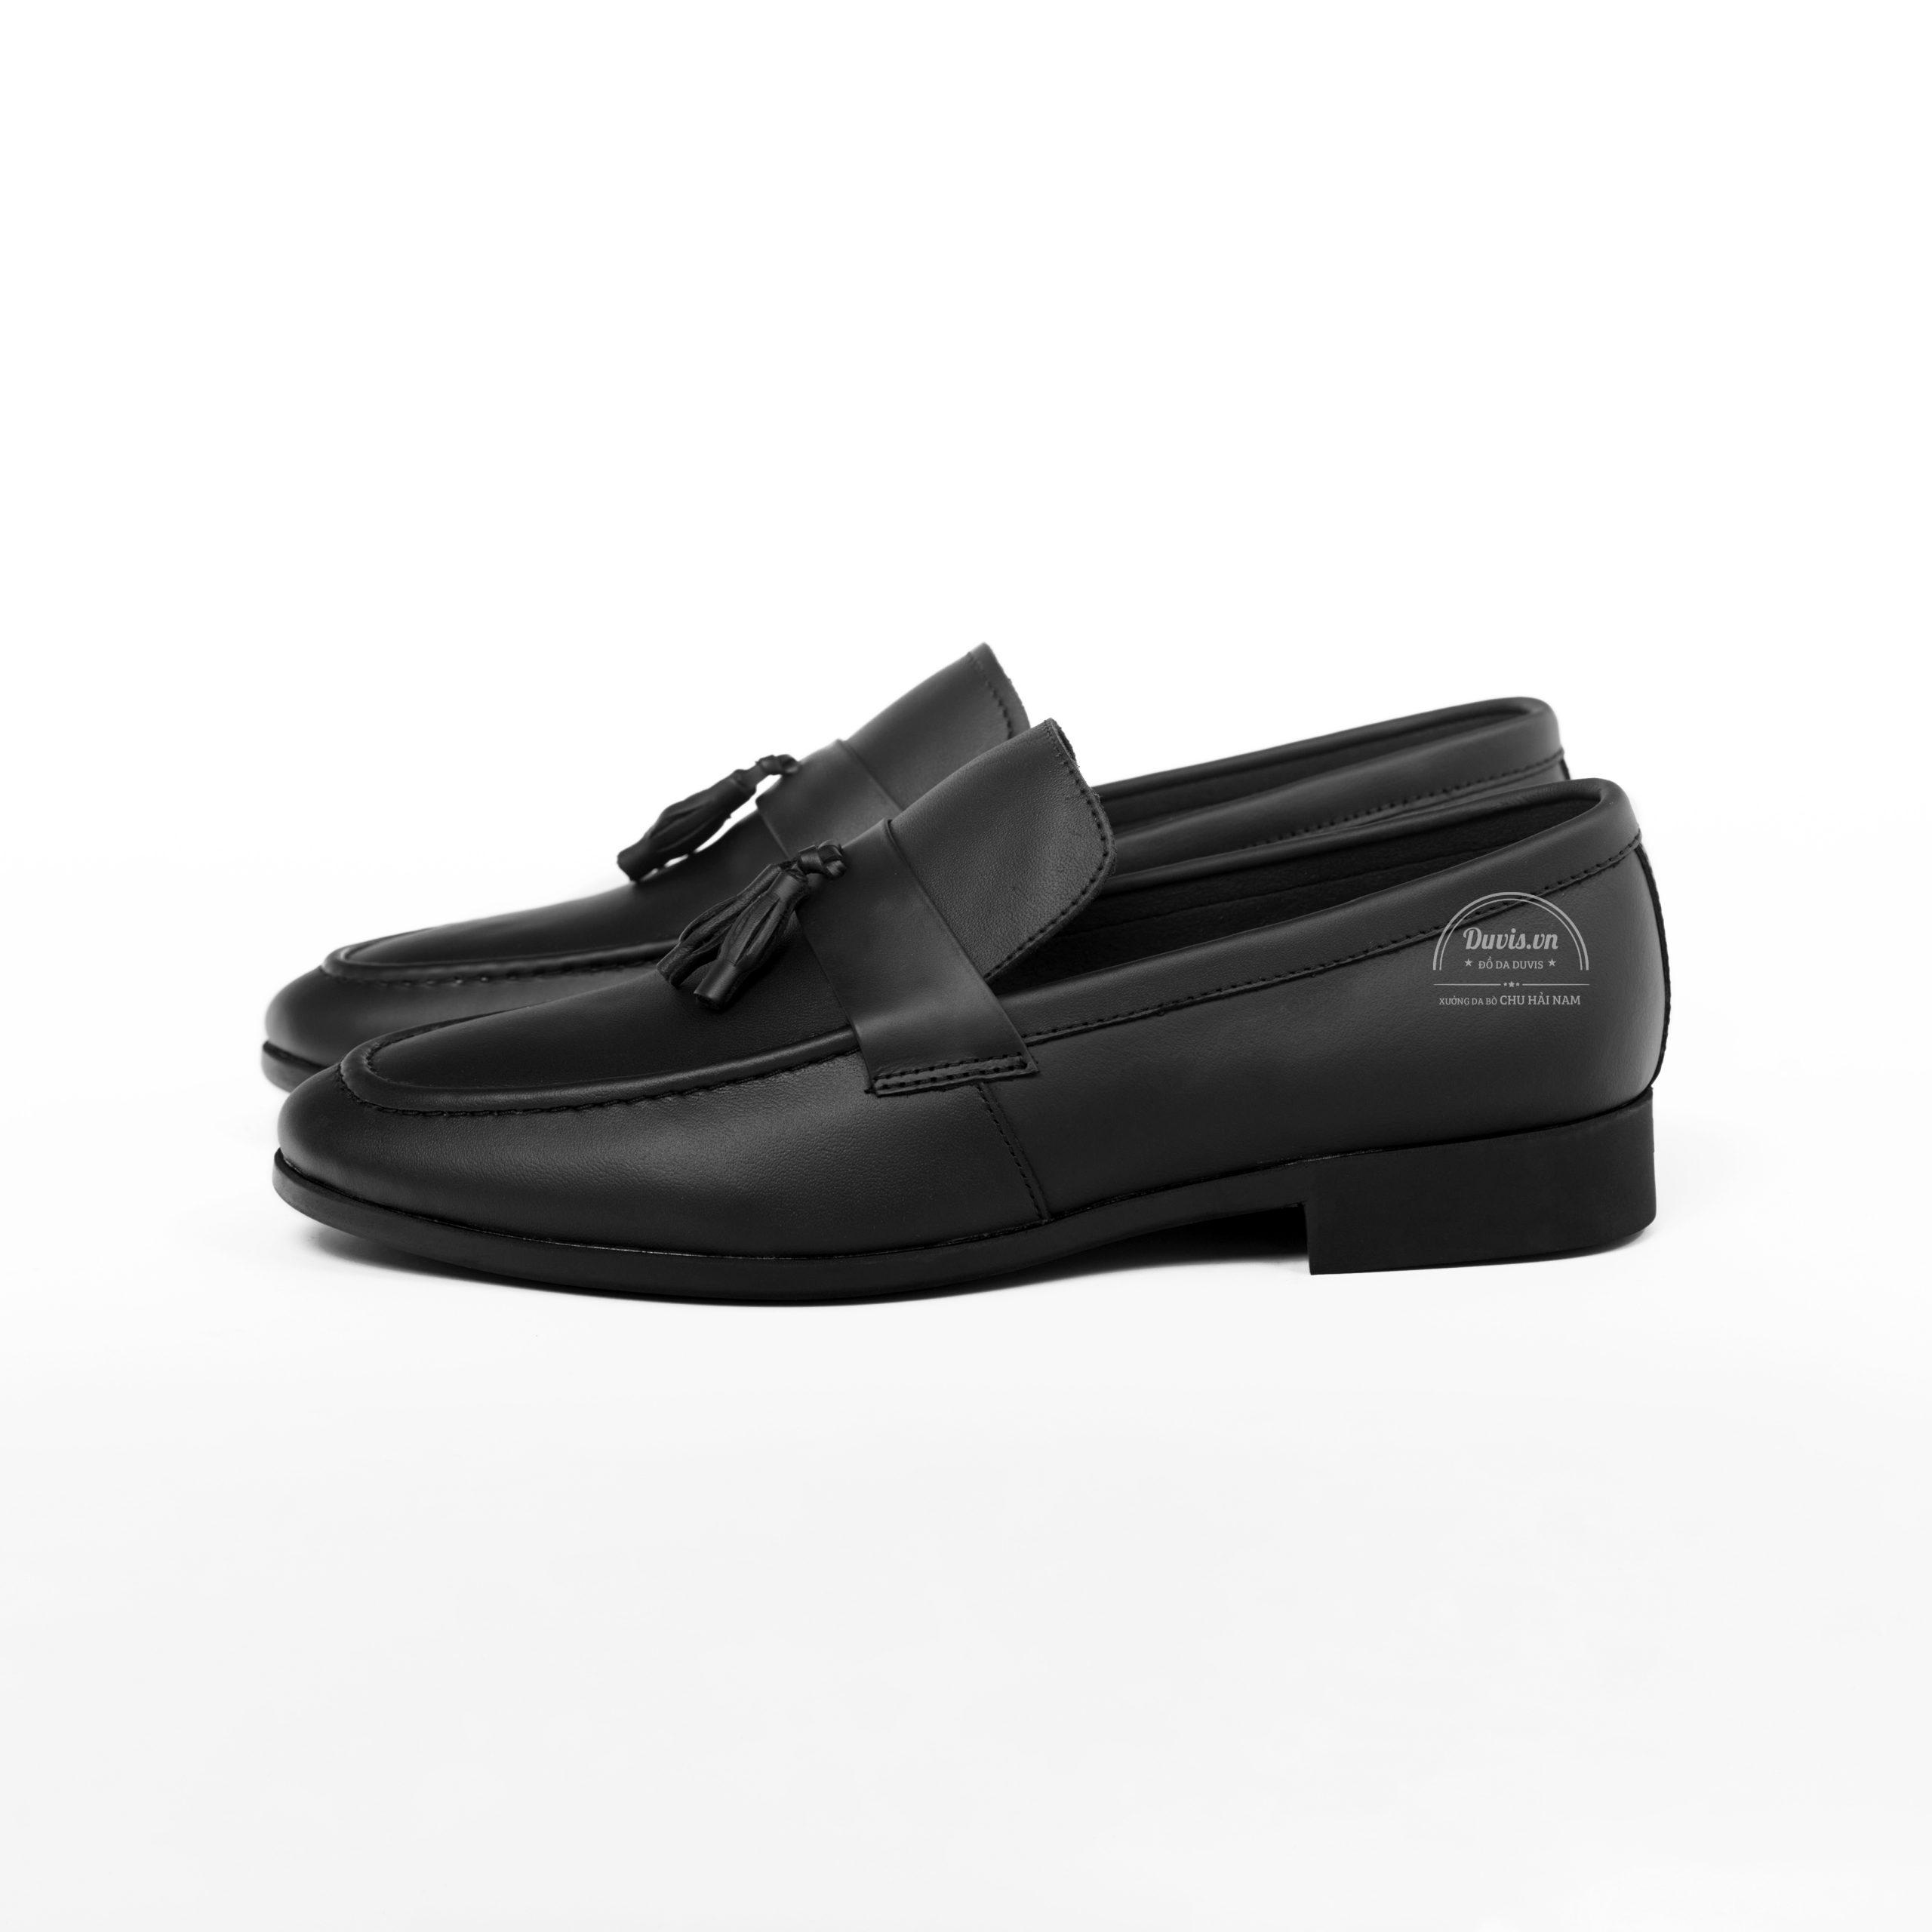 Giày lười công sở C003 làm từ Da bò thật 100% , của thương hiệu giày da Duvis do xưởng da bò Chu Hải Nam sản xuất. Đổi trả nếu phát hiện giả da